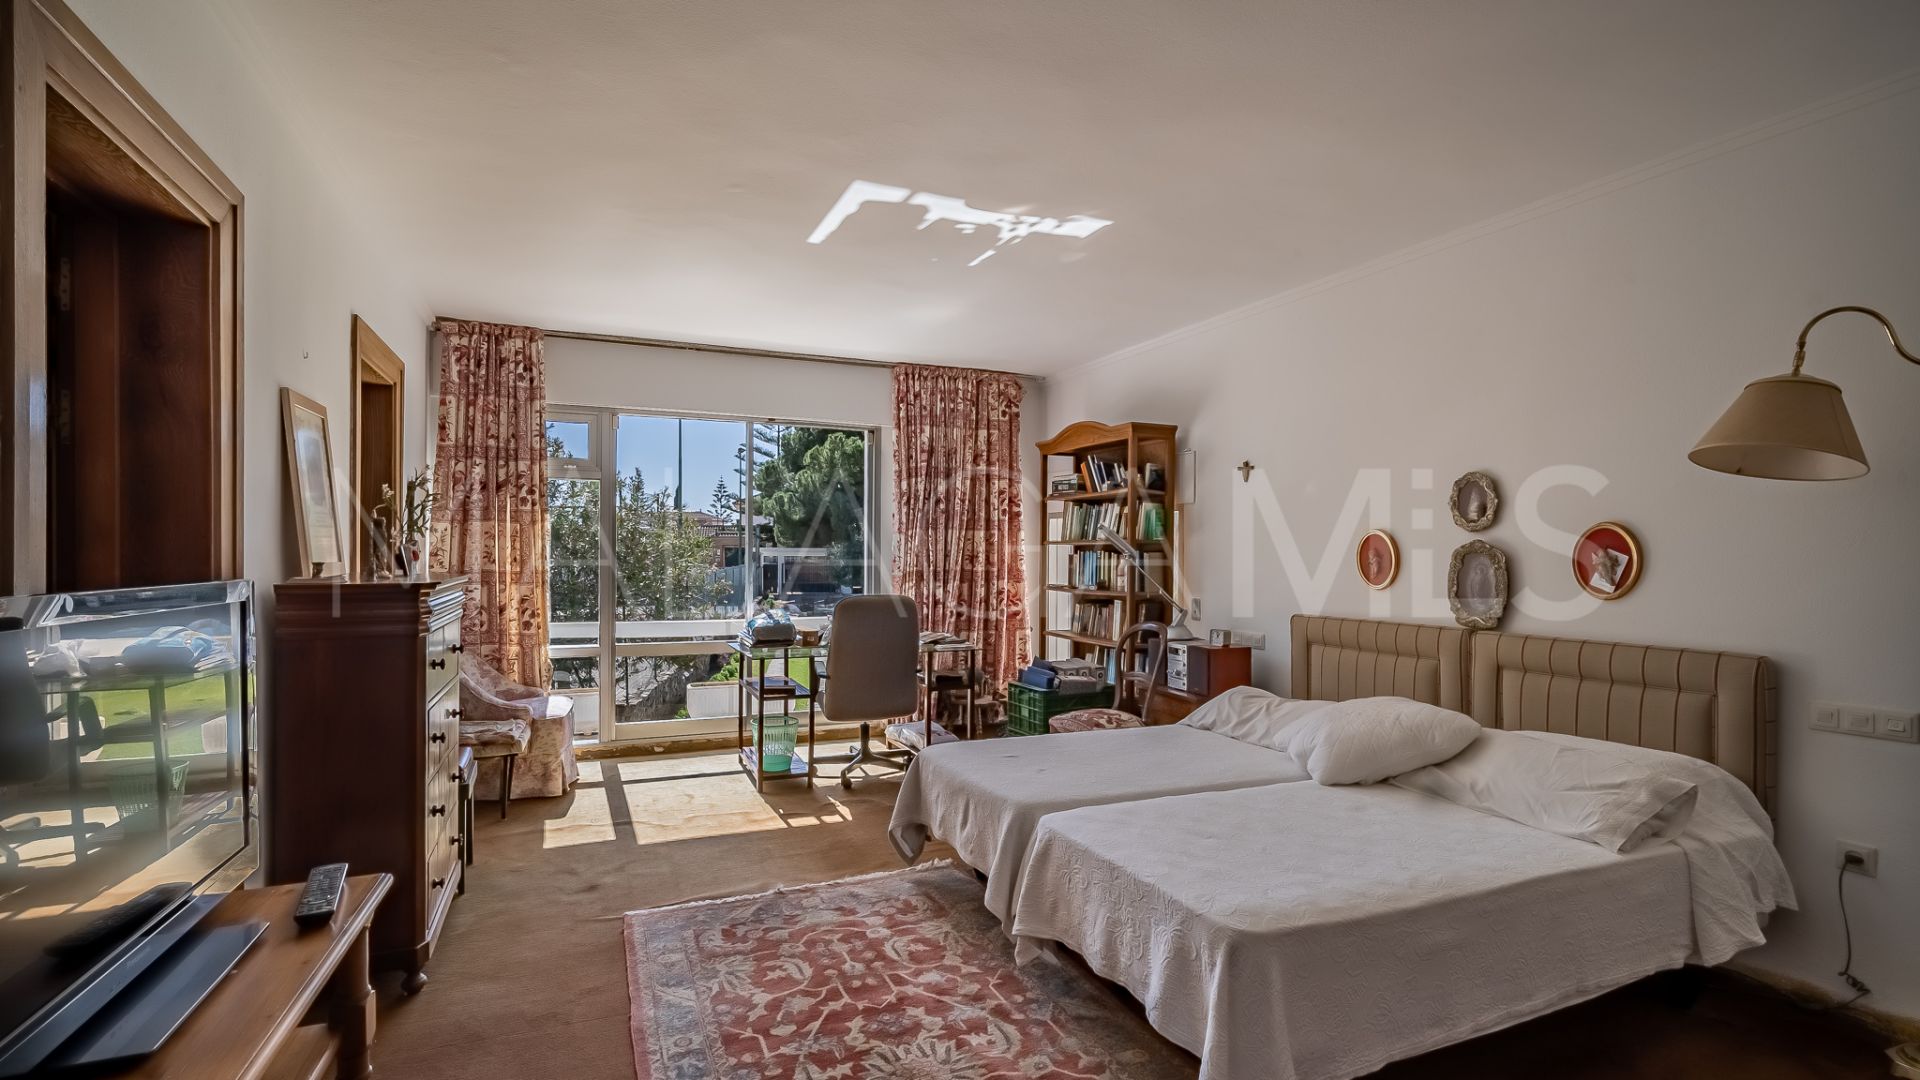 7 bedrooms El Mirador villa for sale